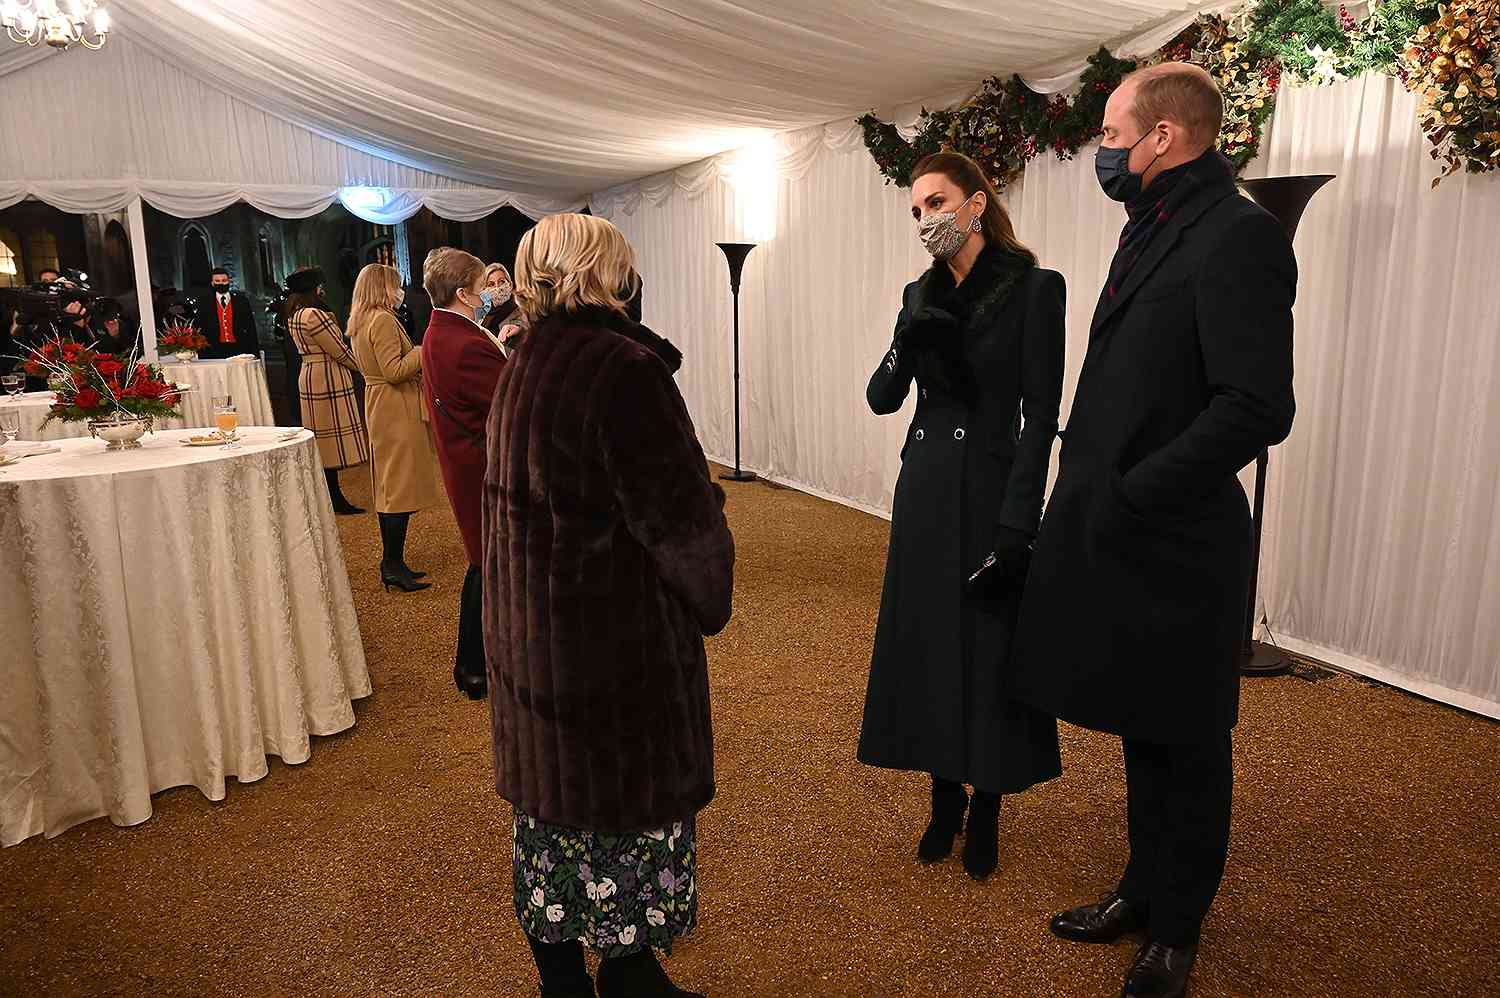 Финальная точка турне принца Уильяма и Кейт Миддлтон: герцоги встретились с Королевой в Виндзорском замке